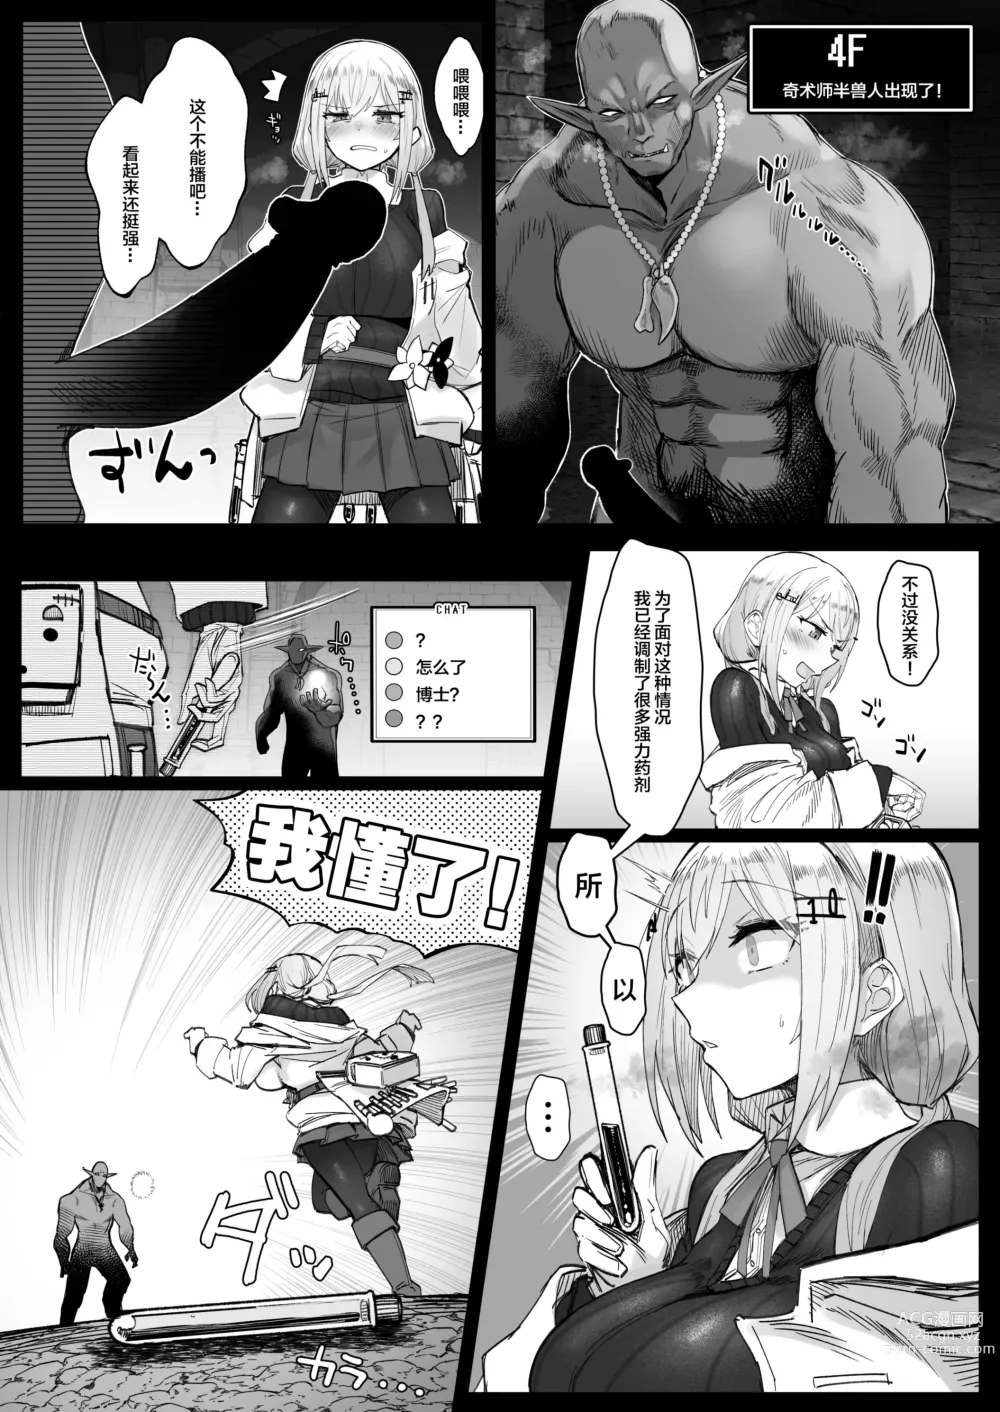 Page 8 of doujinshi Niji Ero Trap Dungeon Bu 3